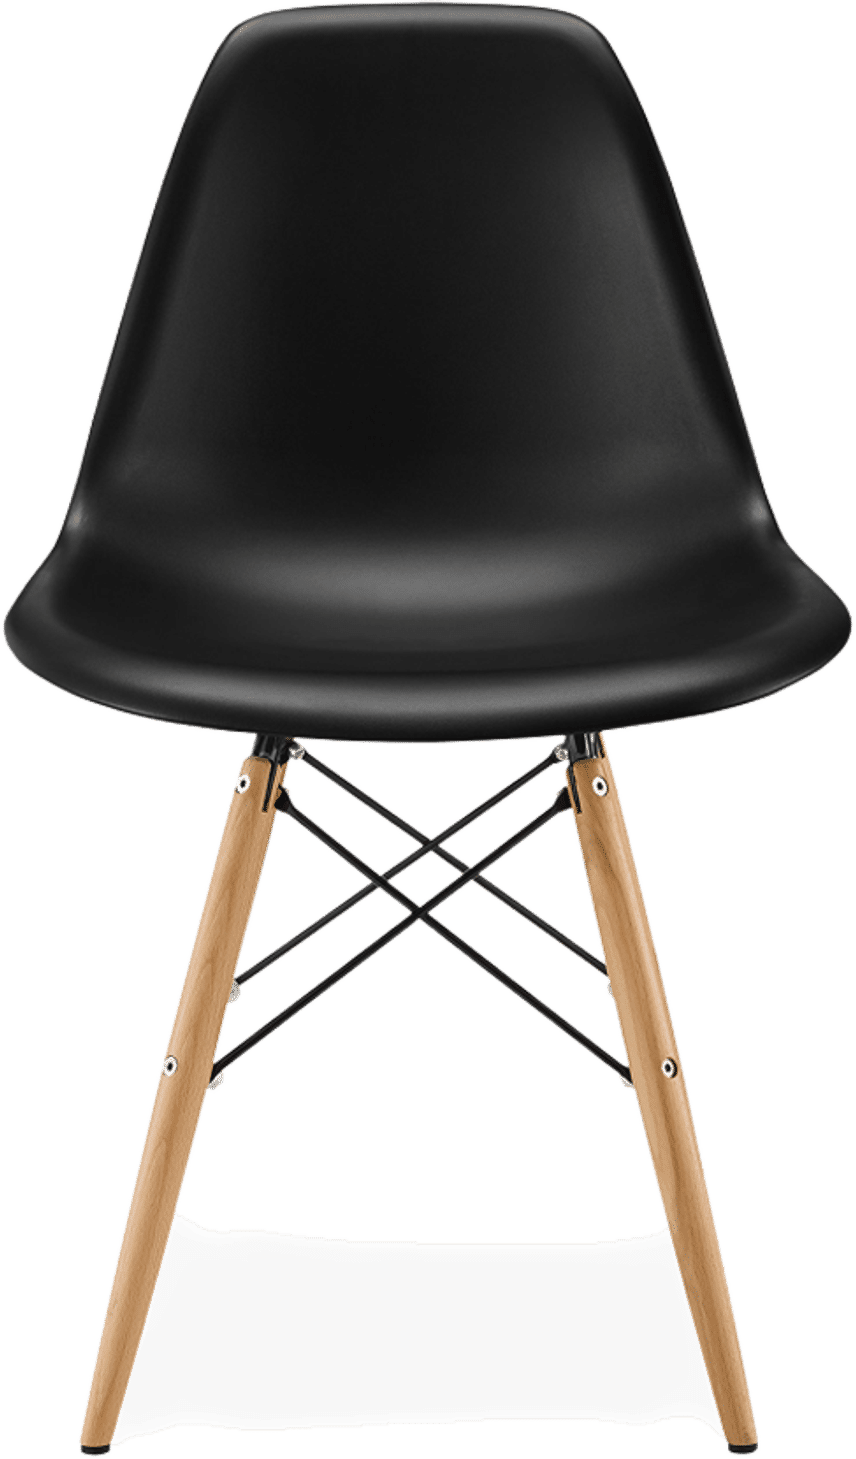 Chaise de style DSW Black/Light Wood image.